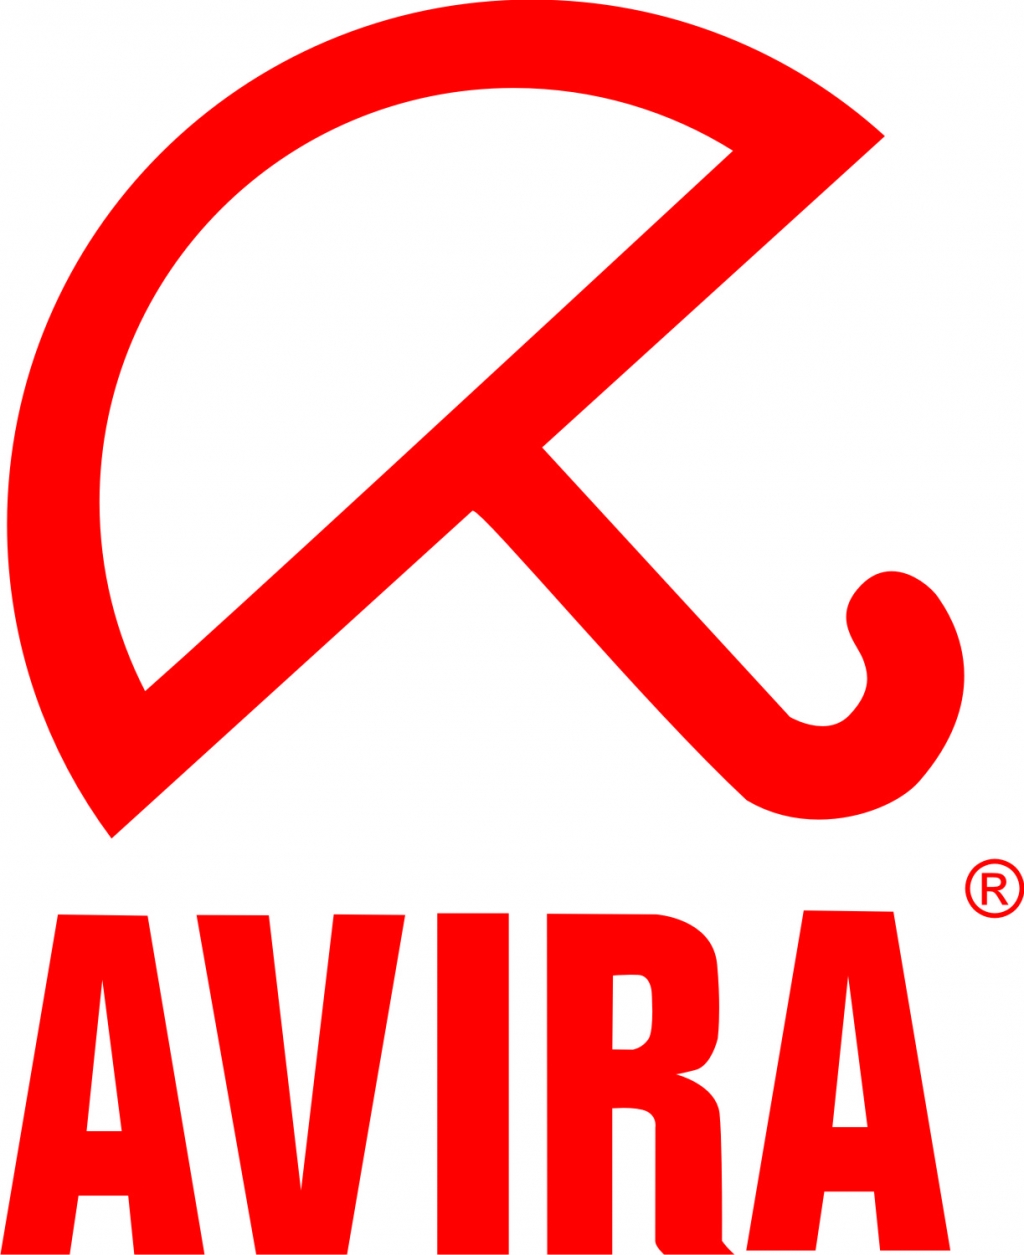 Логотип Avira